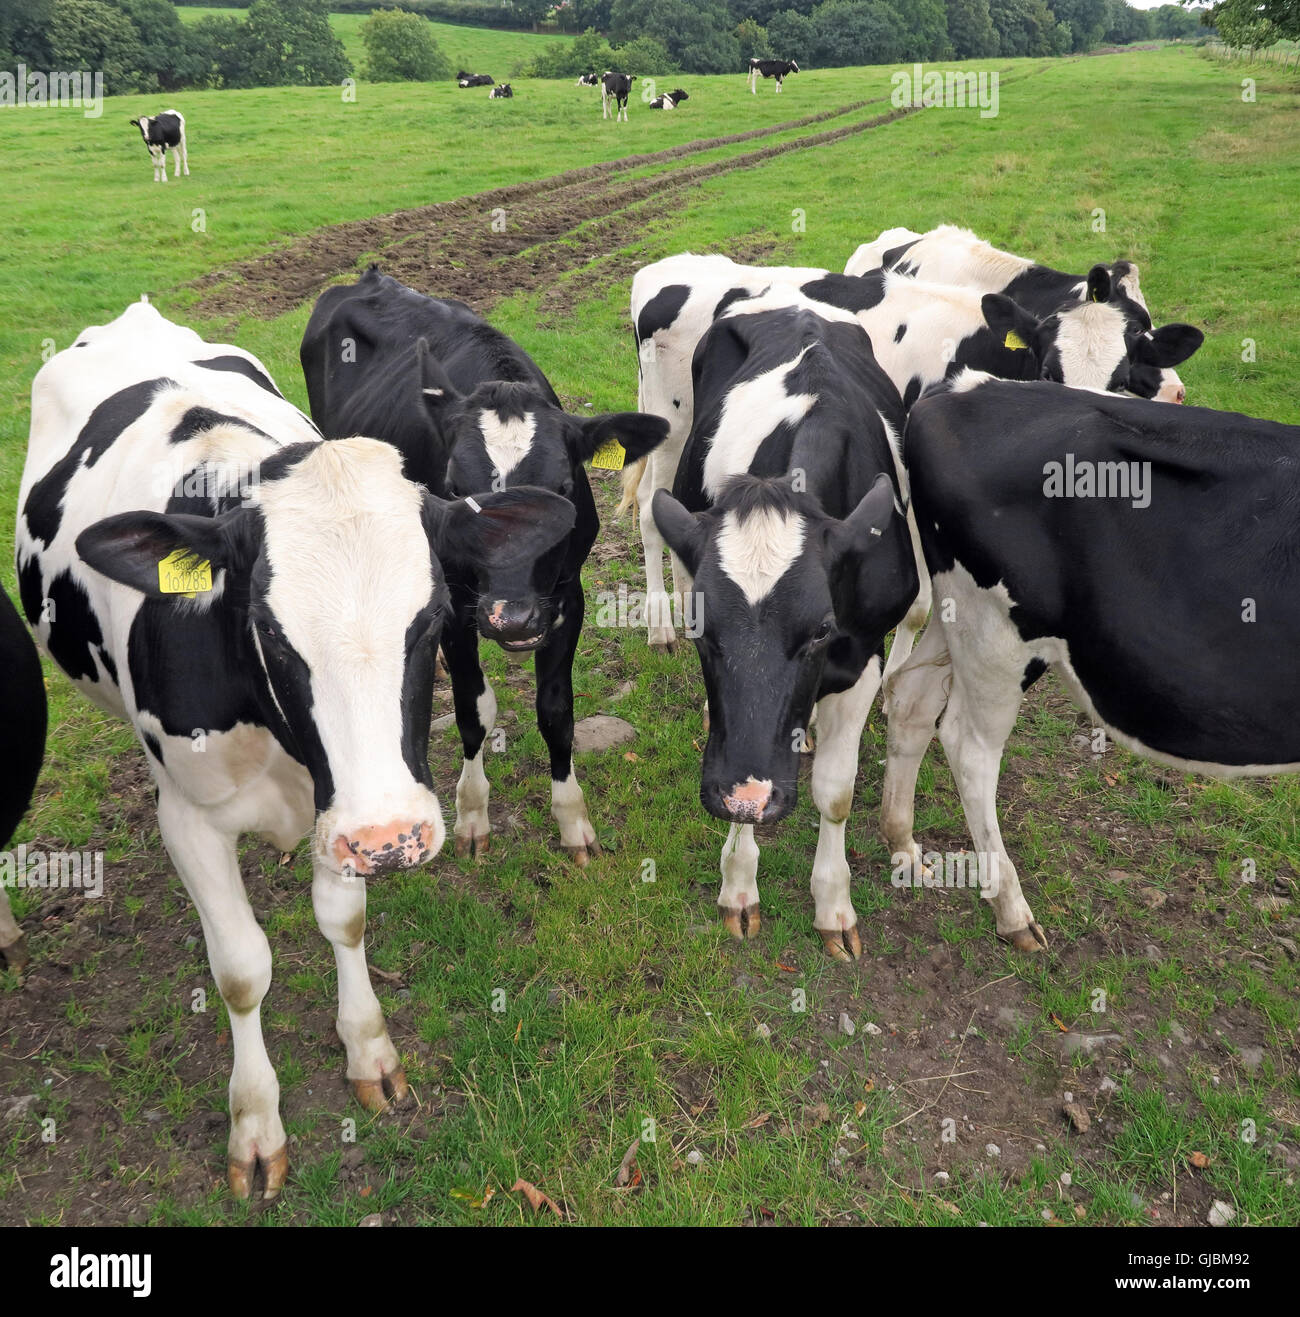 Les bovins, un troupeau de vaches dans un champ de vache, Grappenhall, Cheshire, North West England, UK, WA4 Banque D'Images